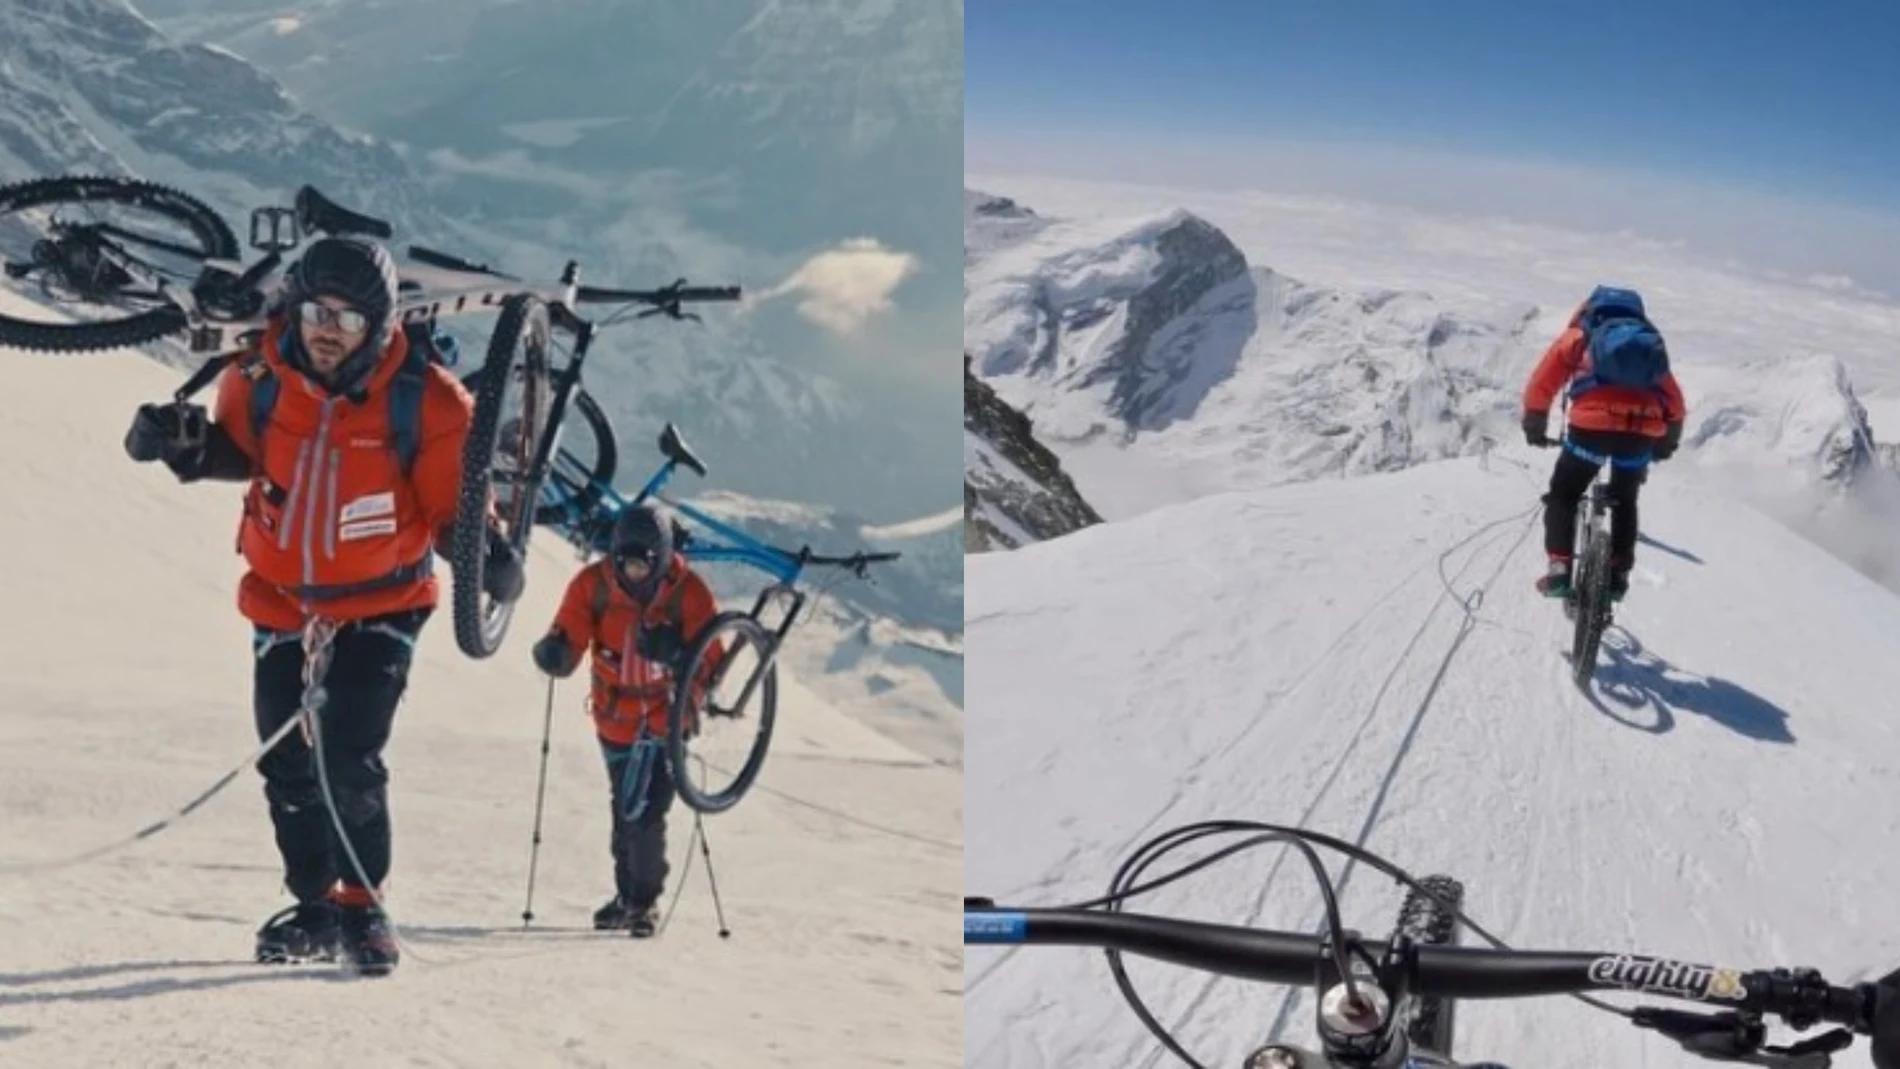 Dos momentos del reto de Tomáš Zejda y Ondřej Novák en el Mera Peak